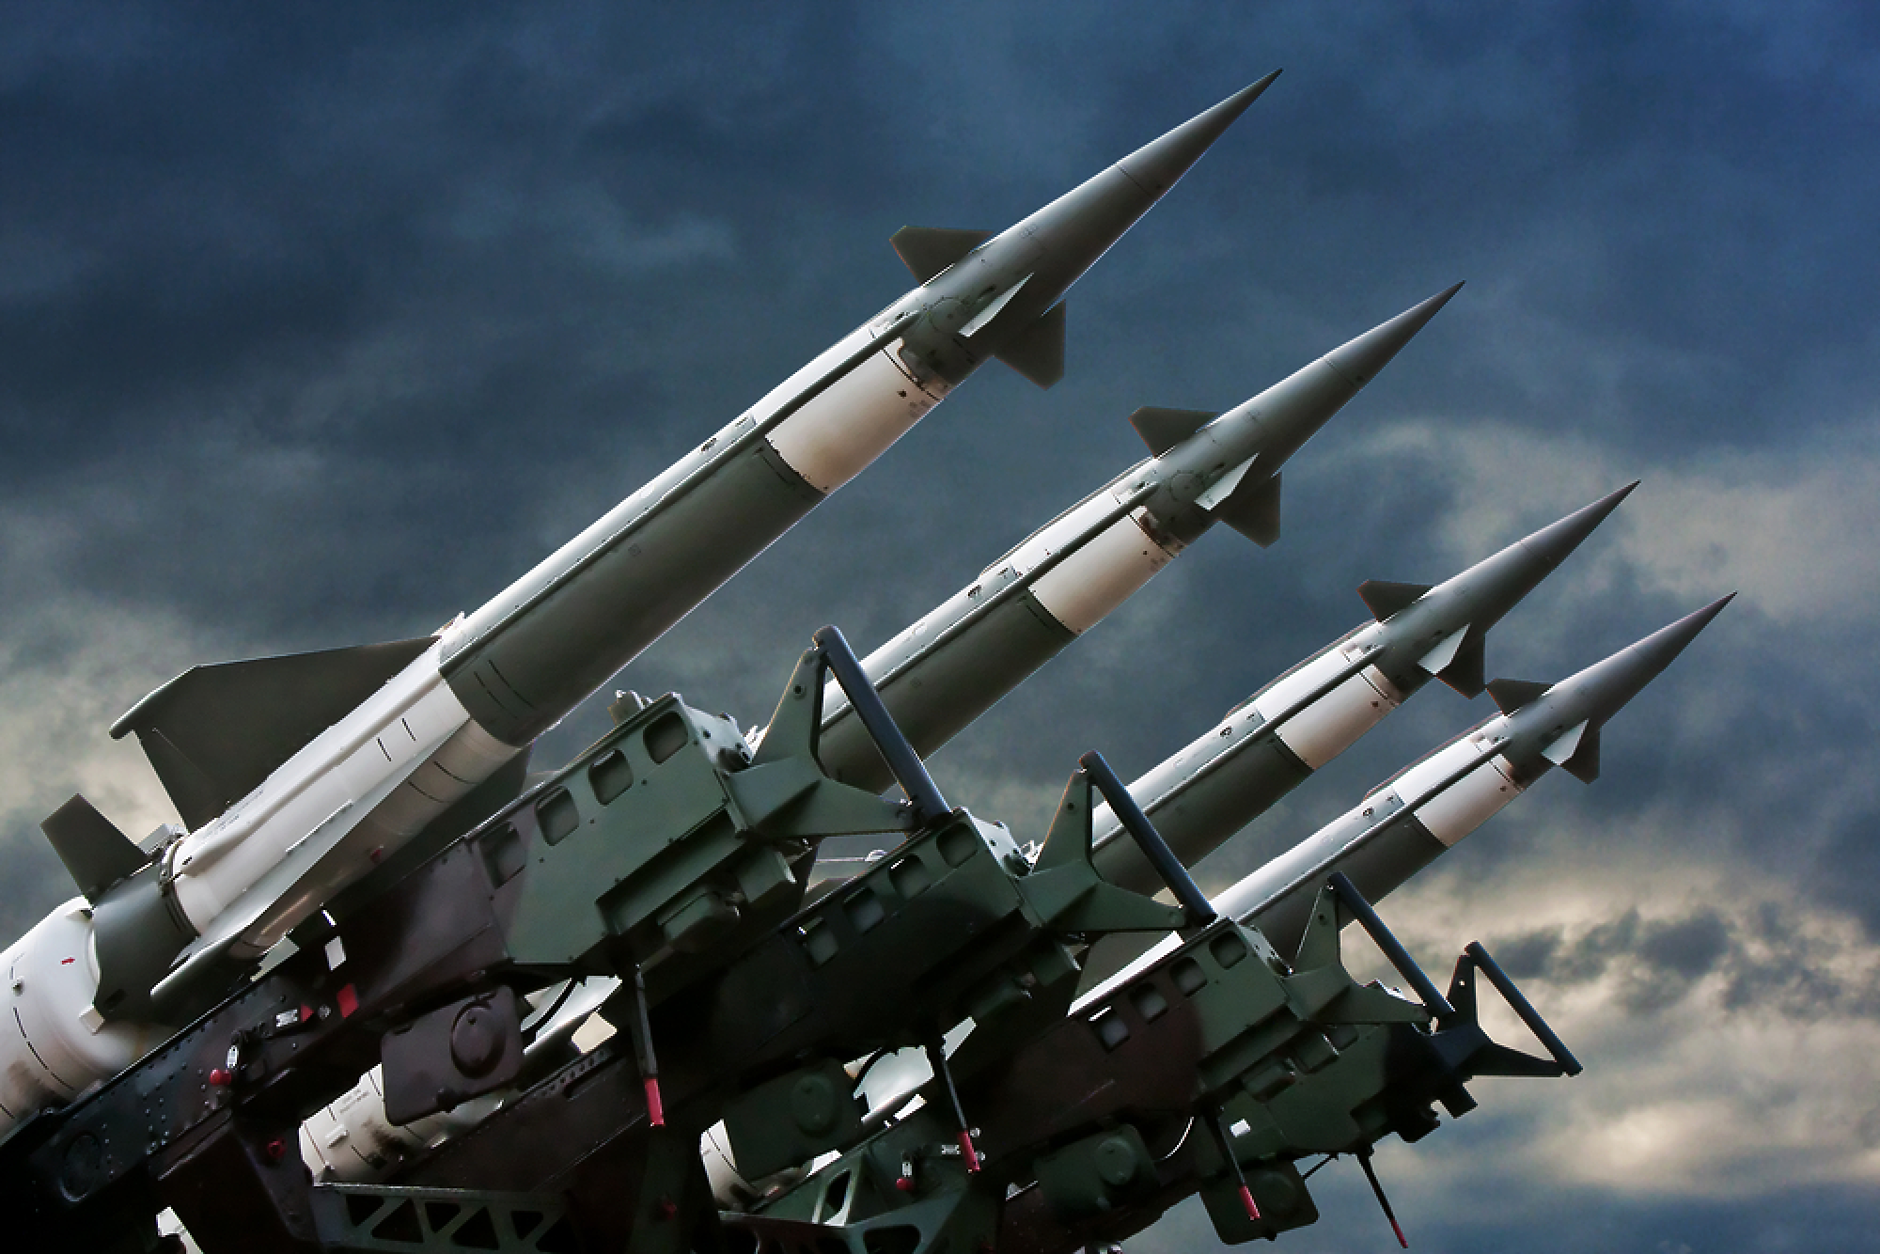 Украйна води преговори със съюзниците си за доставки на ракети с далечен обсег